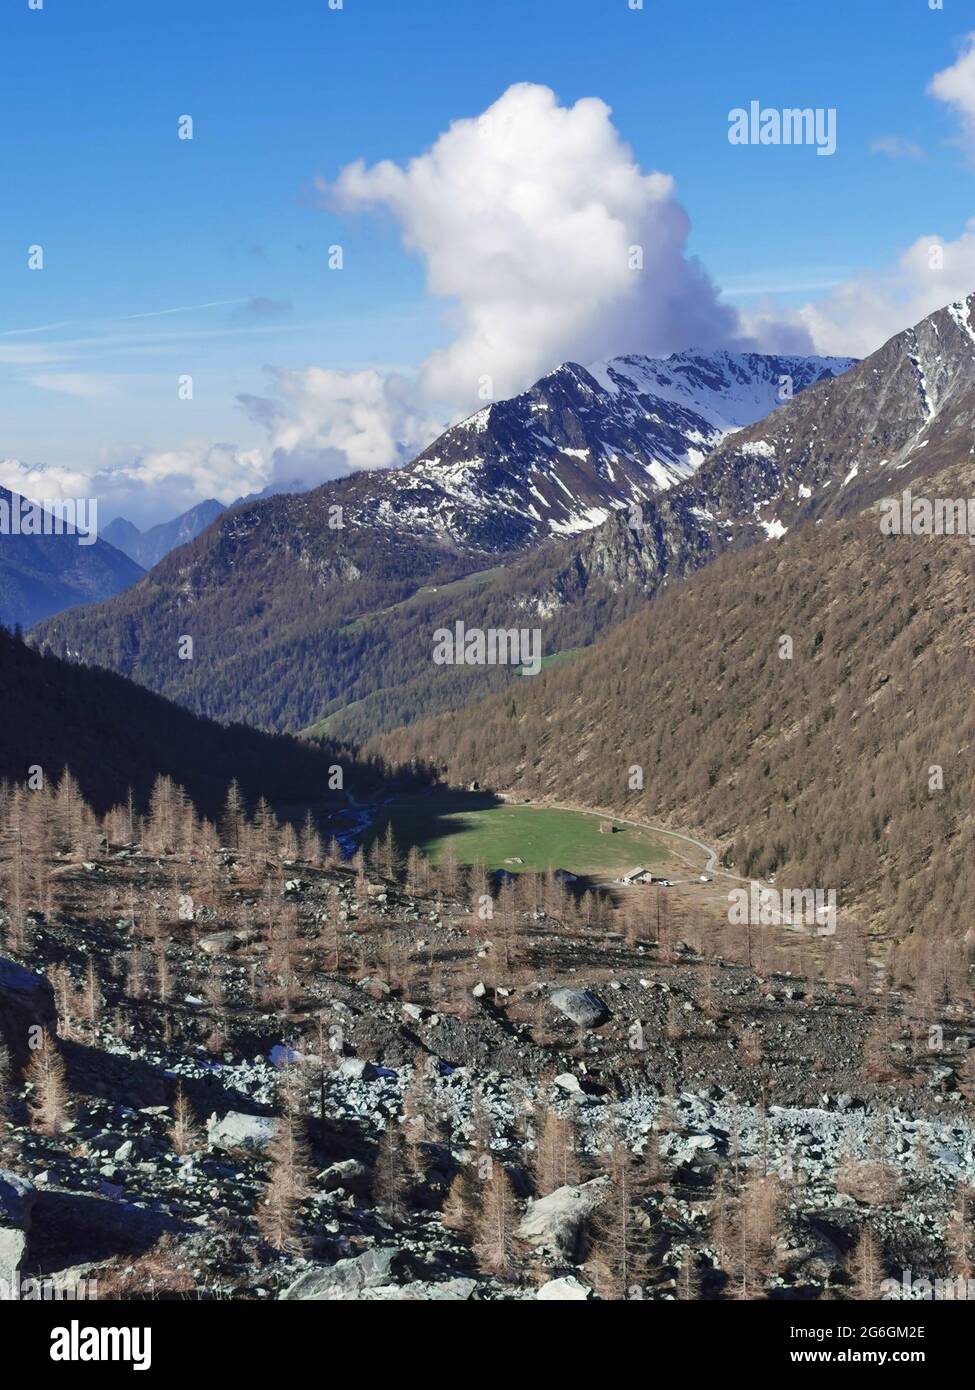 La valle di Ayas e i piani di Verra inferiore visti dal punto di vista alto del lago blu sul Monte Rosa nel nord Italia vicino Aosta Foto Stock